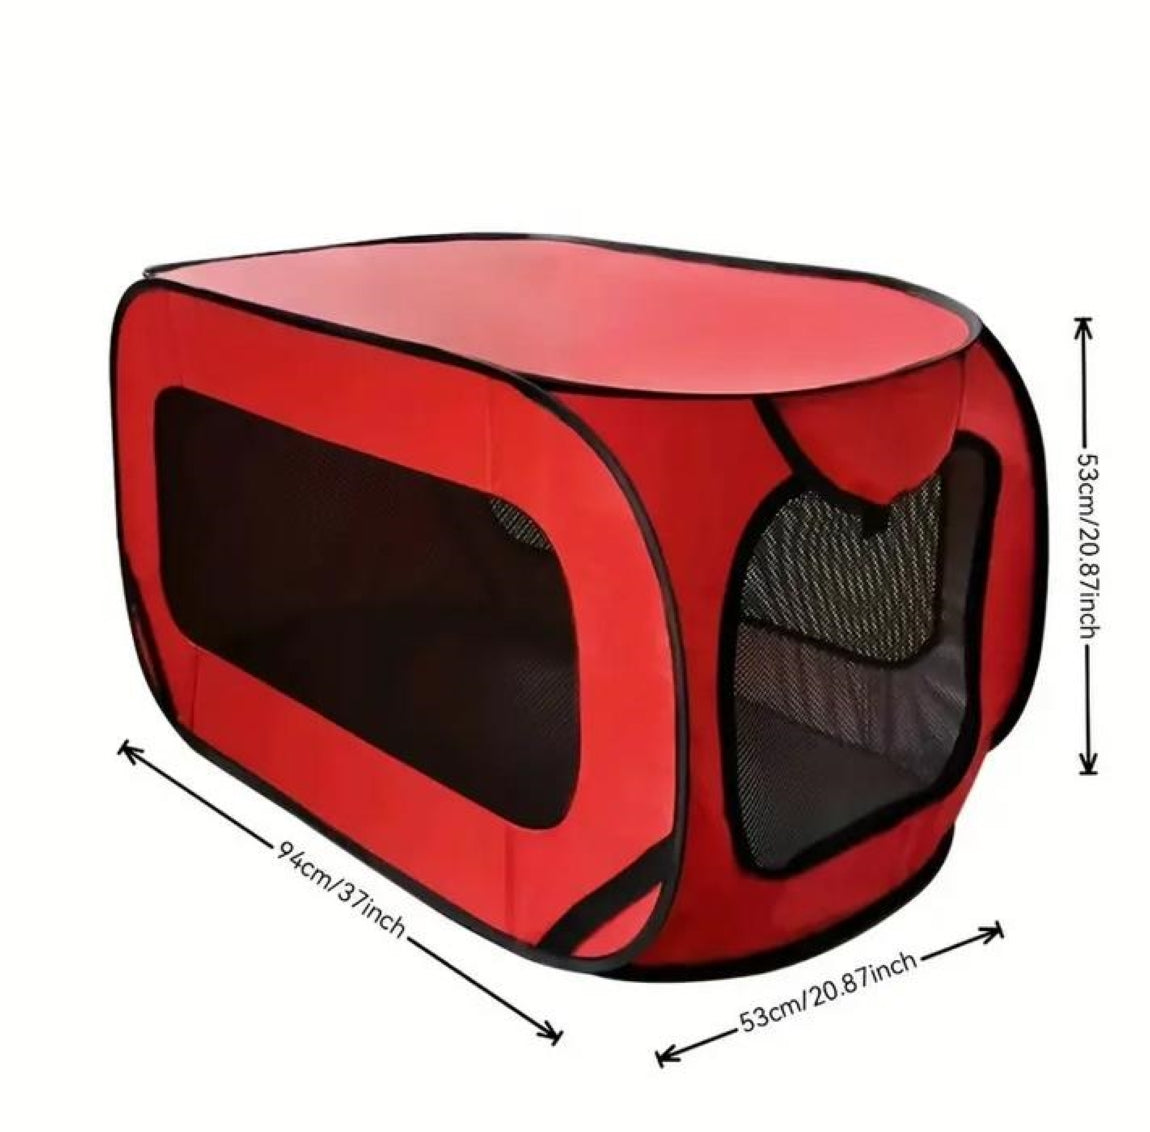 Faltbare Hunde-Box für Auto, Indoor oder Outdoor